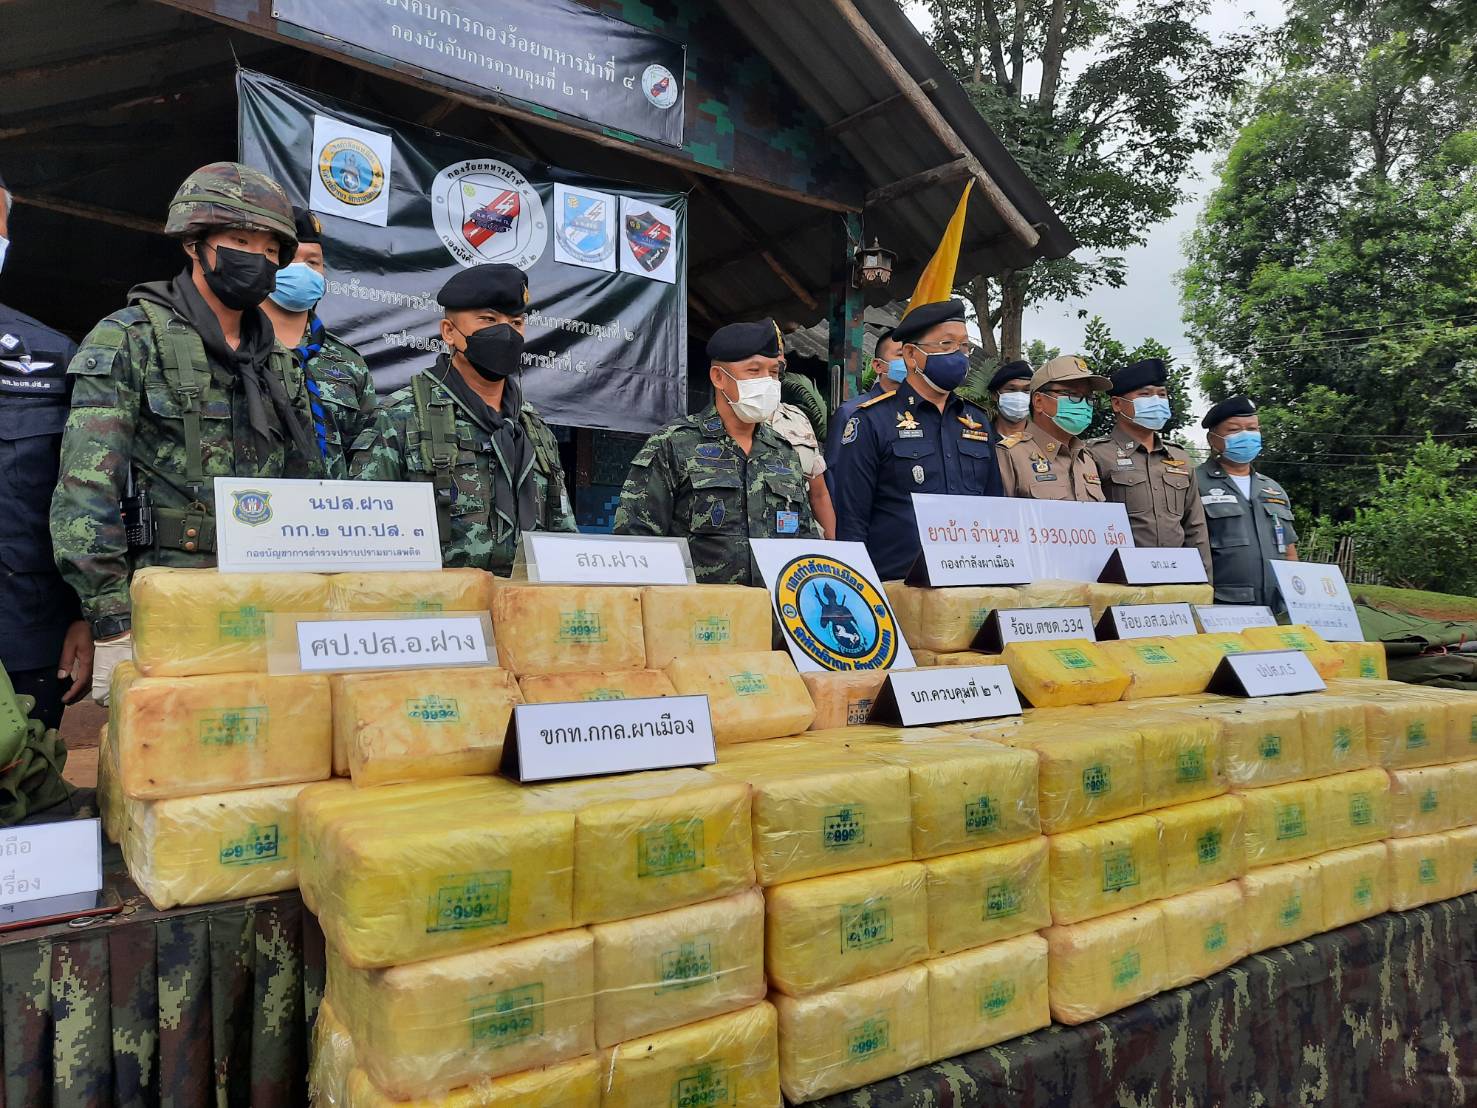 ผู้บัญชาการกองกำลังผาเมืองแถลงข่าวพบกลุ่มค้ายาเสพติดขนยาเข้าไทยเตรียมลงใต้ กว่า 3,930,000 เม็ด  หลังเปิดยุทธการสกัดกั้น อ.ฝาง จังหวัดเชียงใหม่